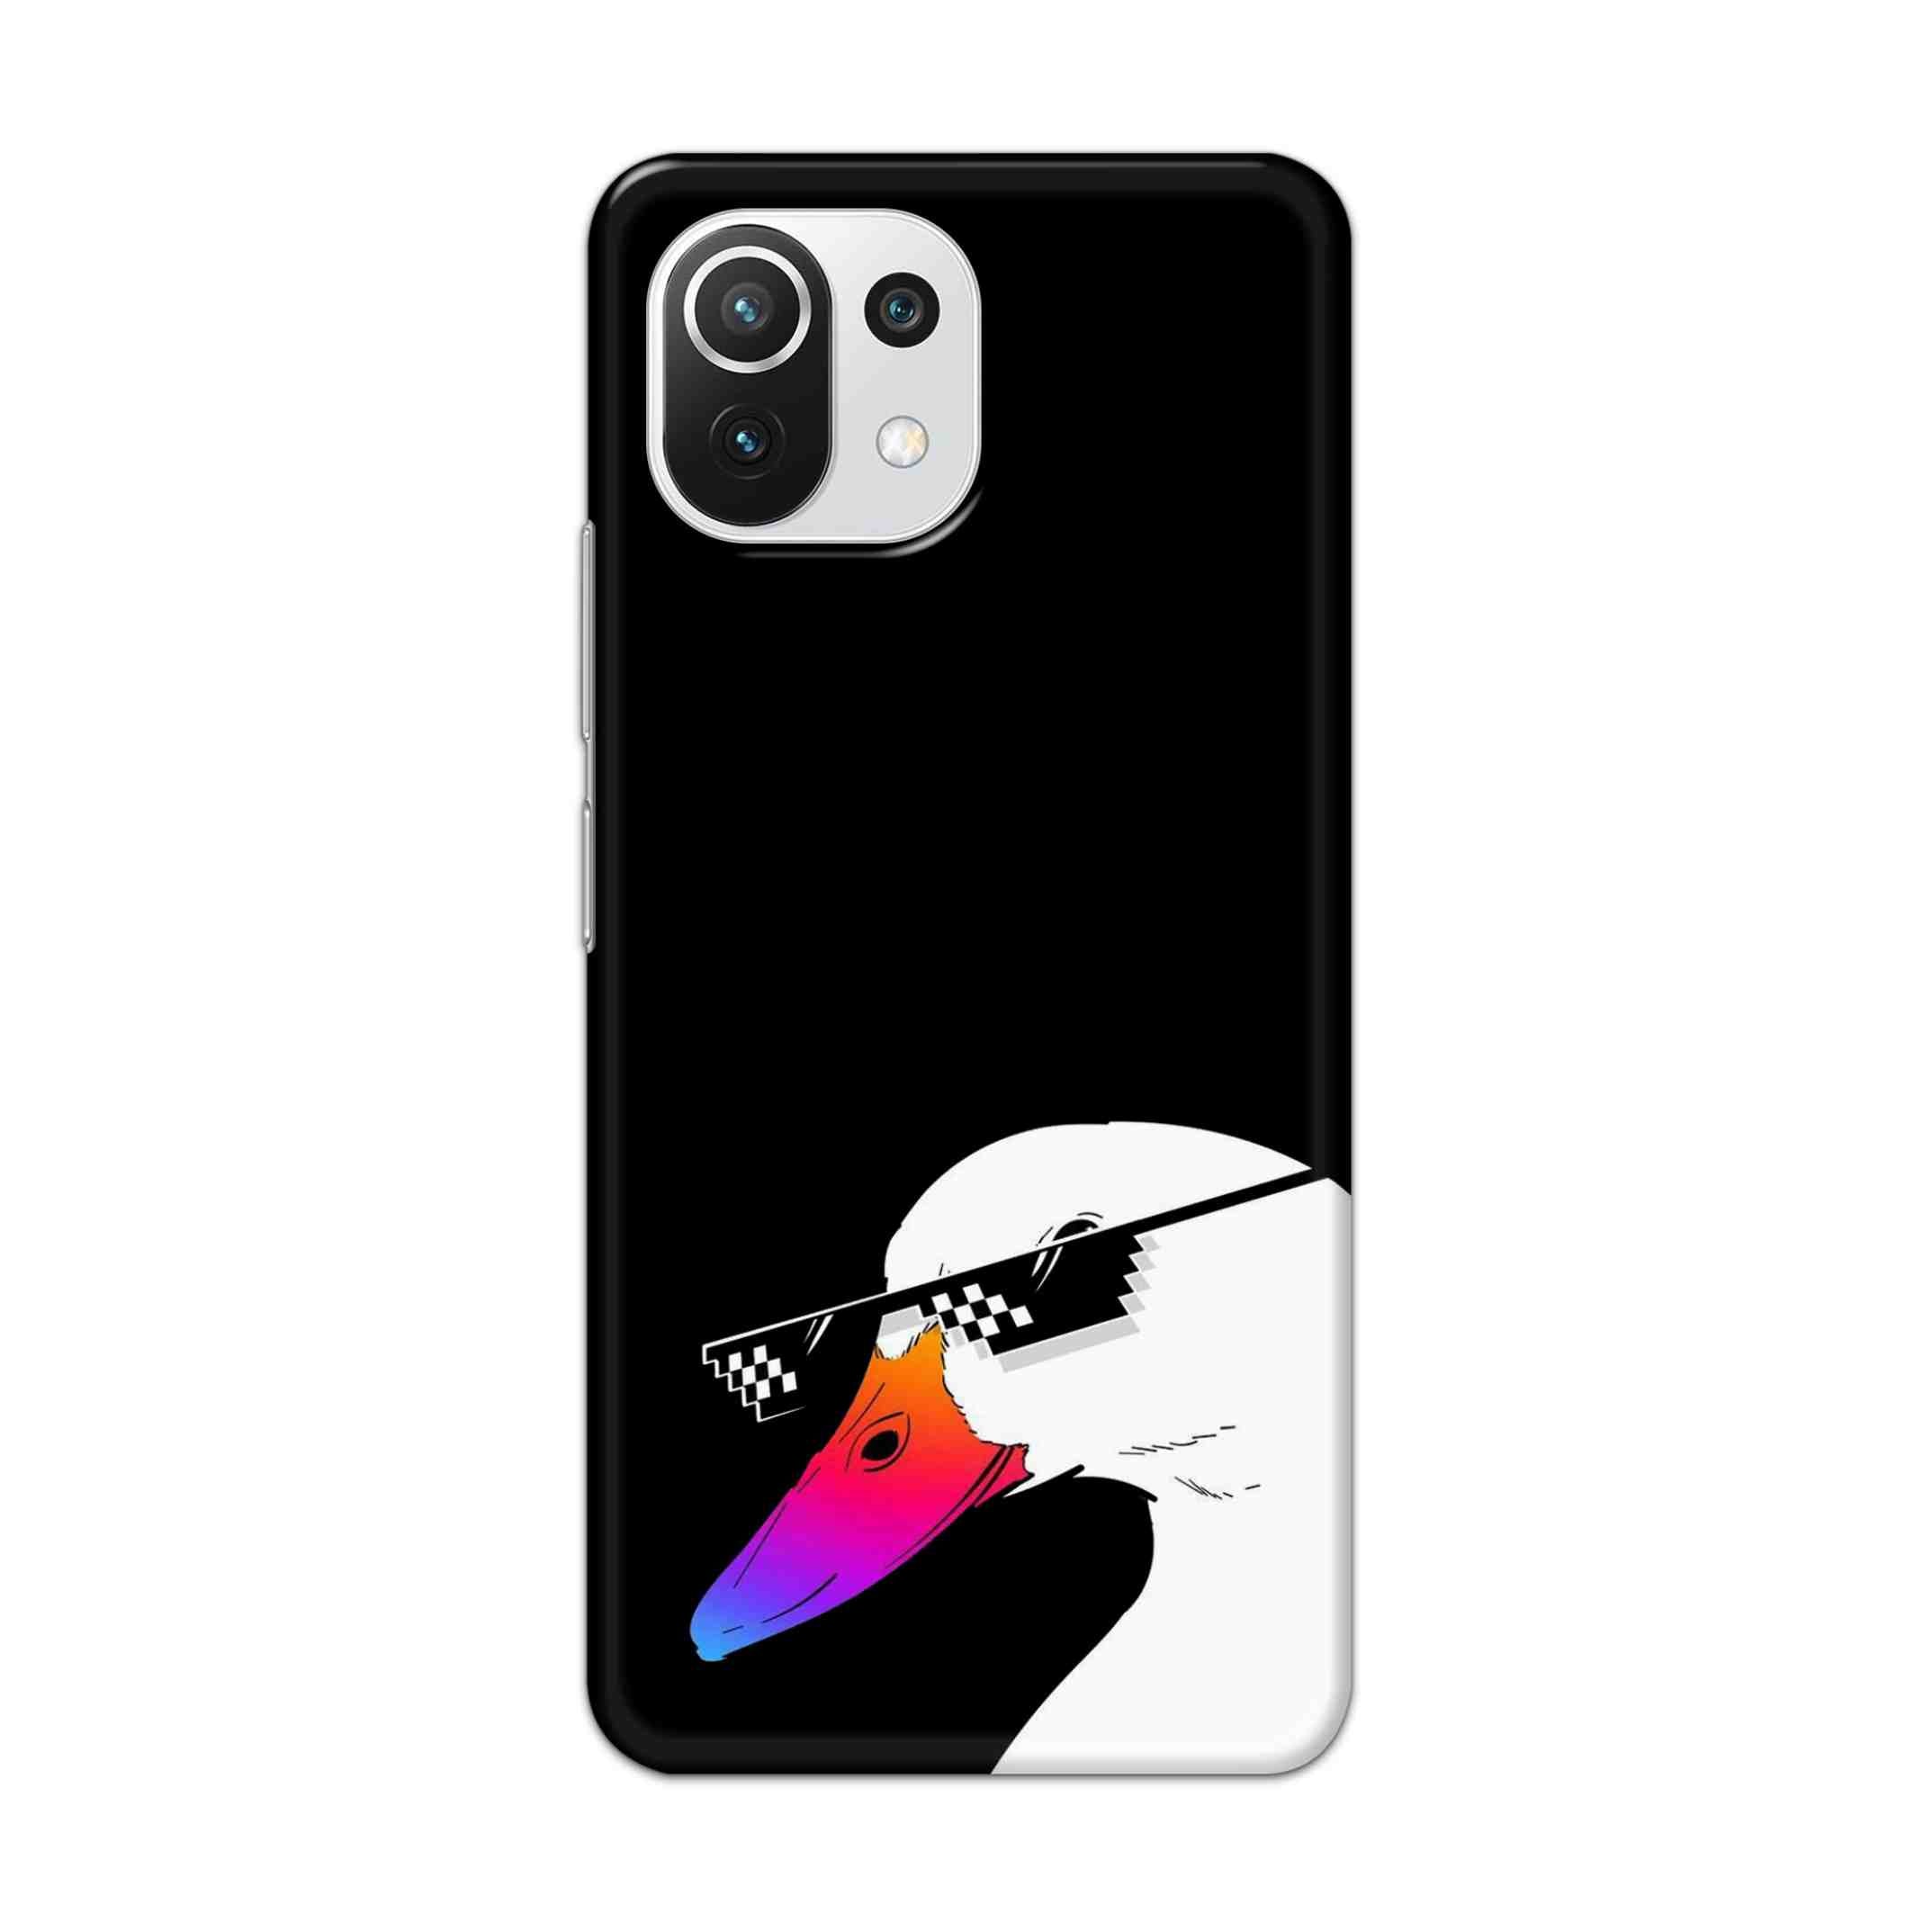 Buy Neon Duck Hard Back Mobile Phone Case Cover For Mi 11 Lite NE 5G Online